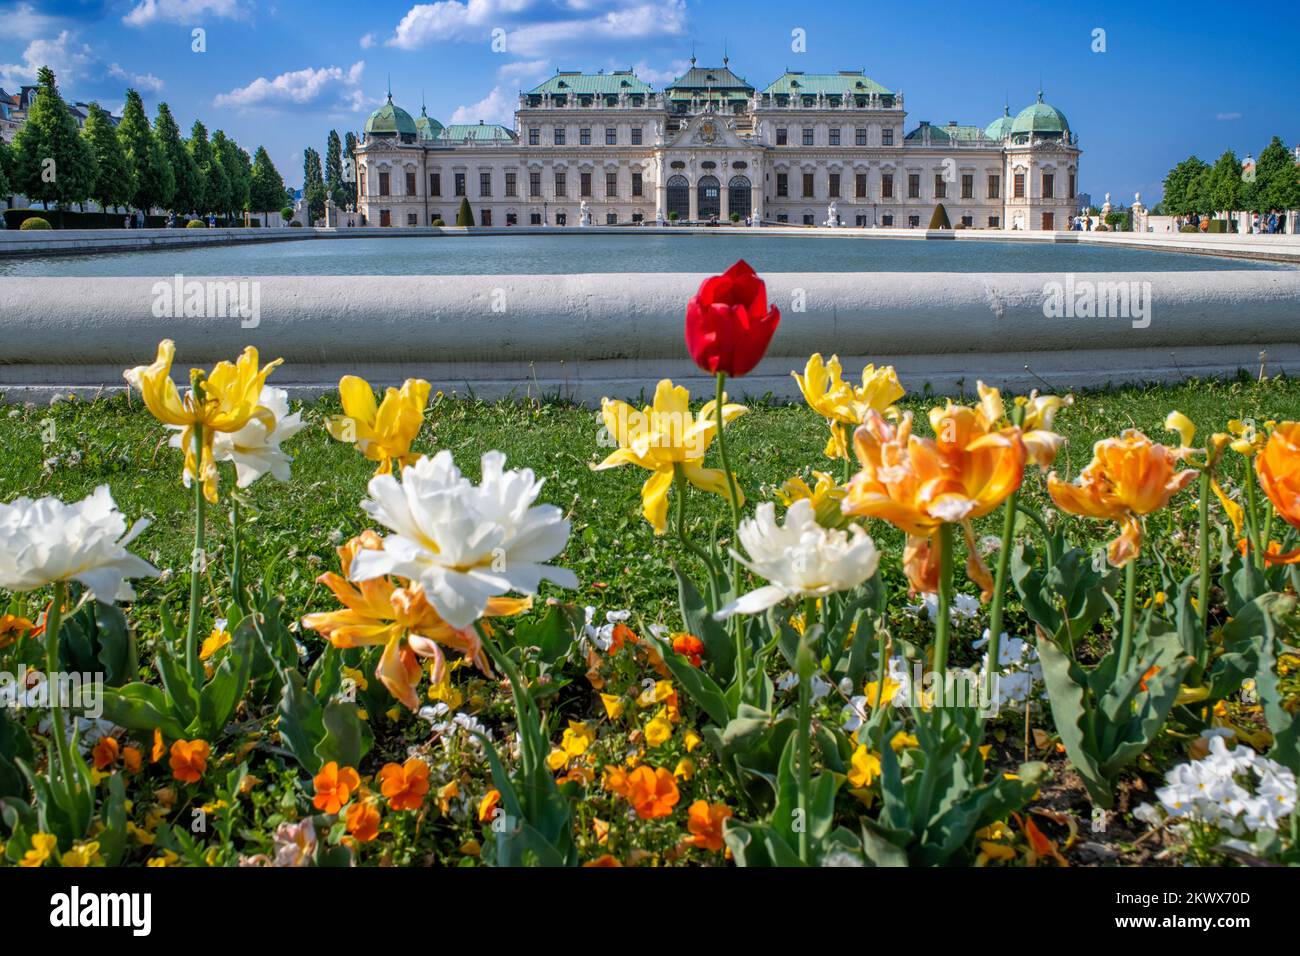 Jardines del palacio y museo Schloss Belvedere, Viena, Austria. Los jardines barrocos del Belvedere se encuentran entre los más bellos del mundo Foto de stock